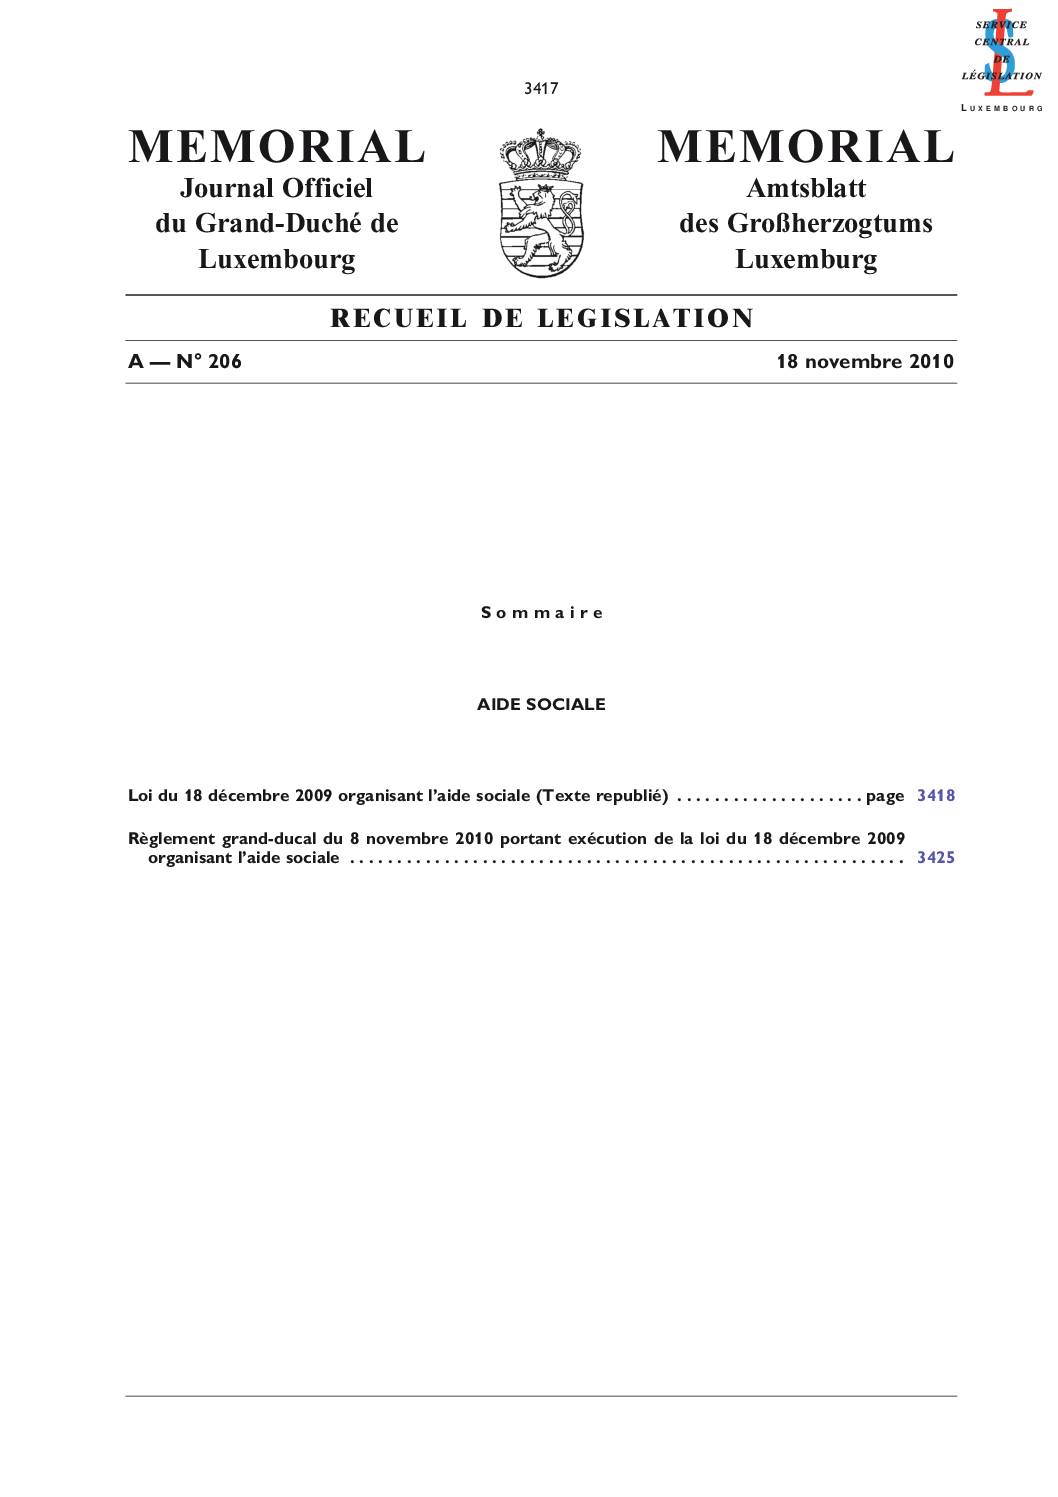 Règlement grand-ducal du 8 novembre 2010 portant exécution de la loi précitée